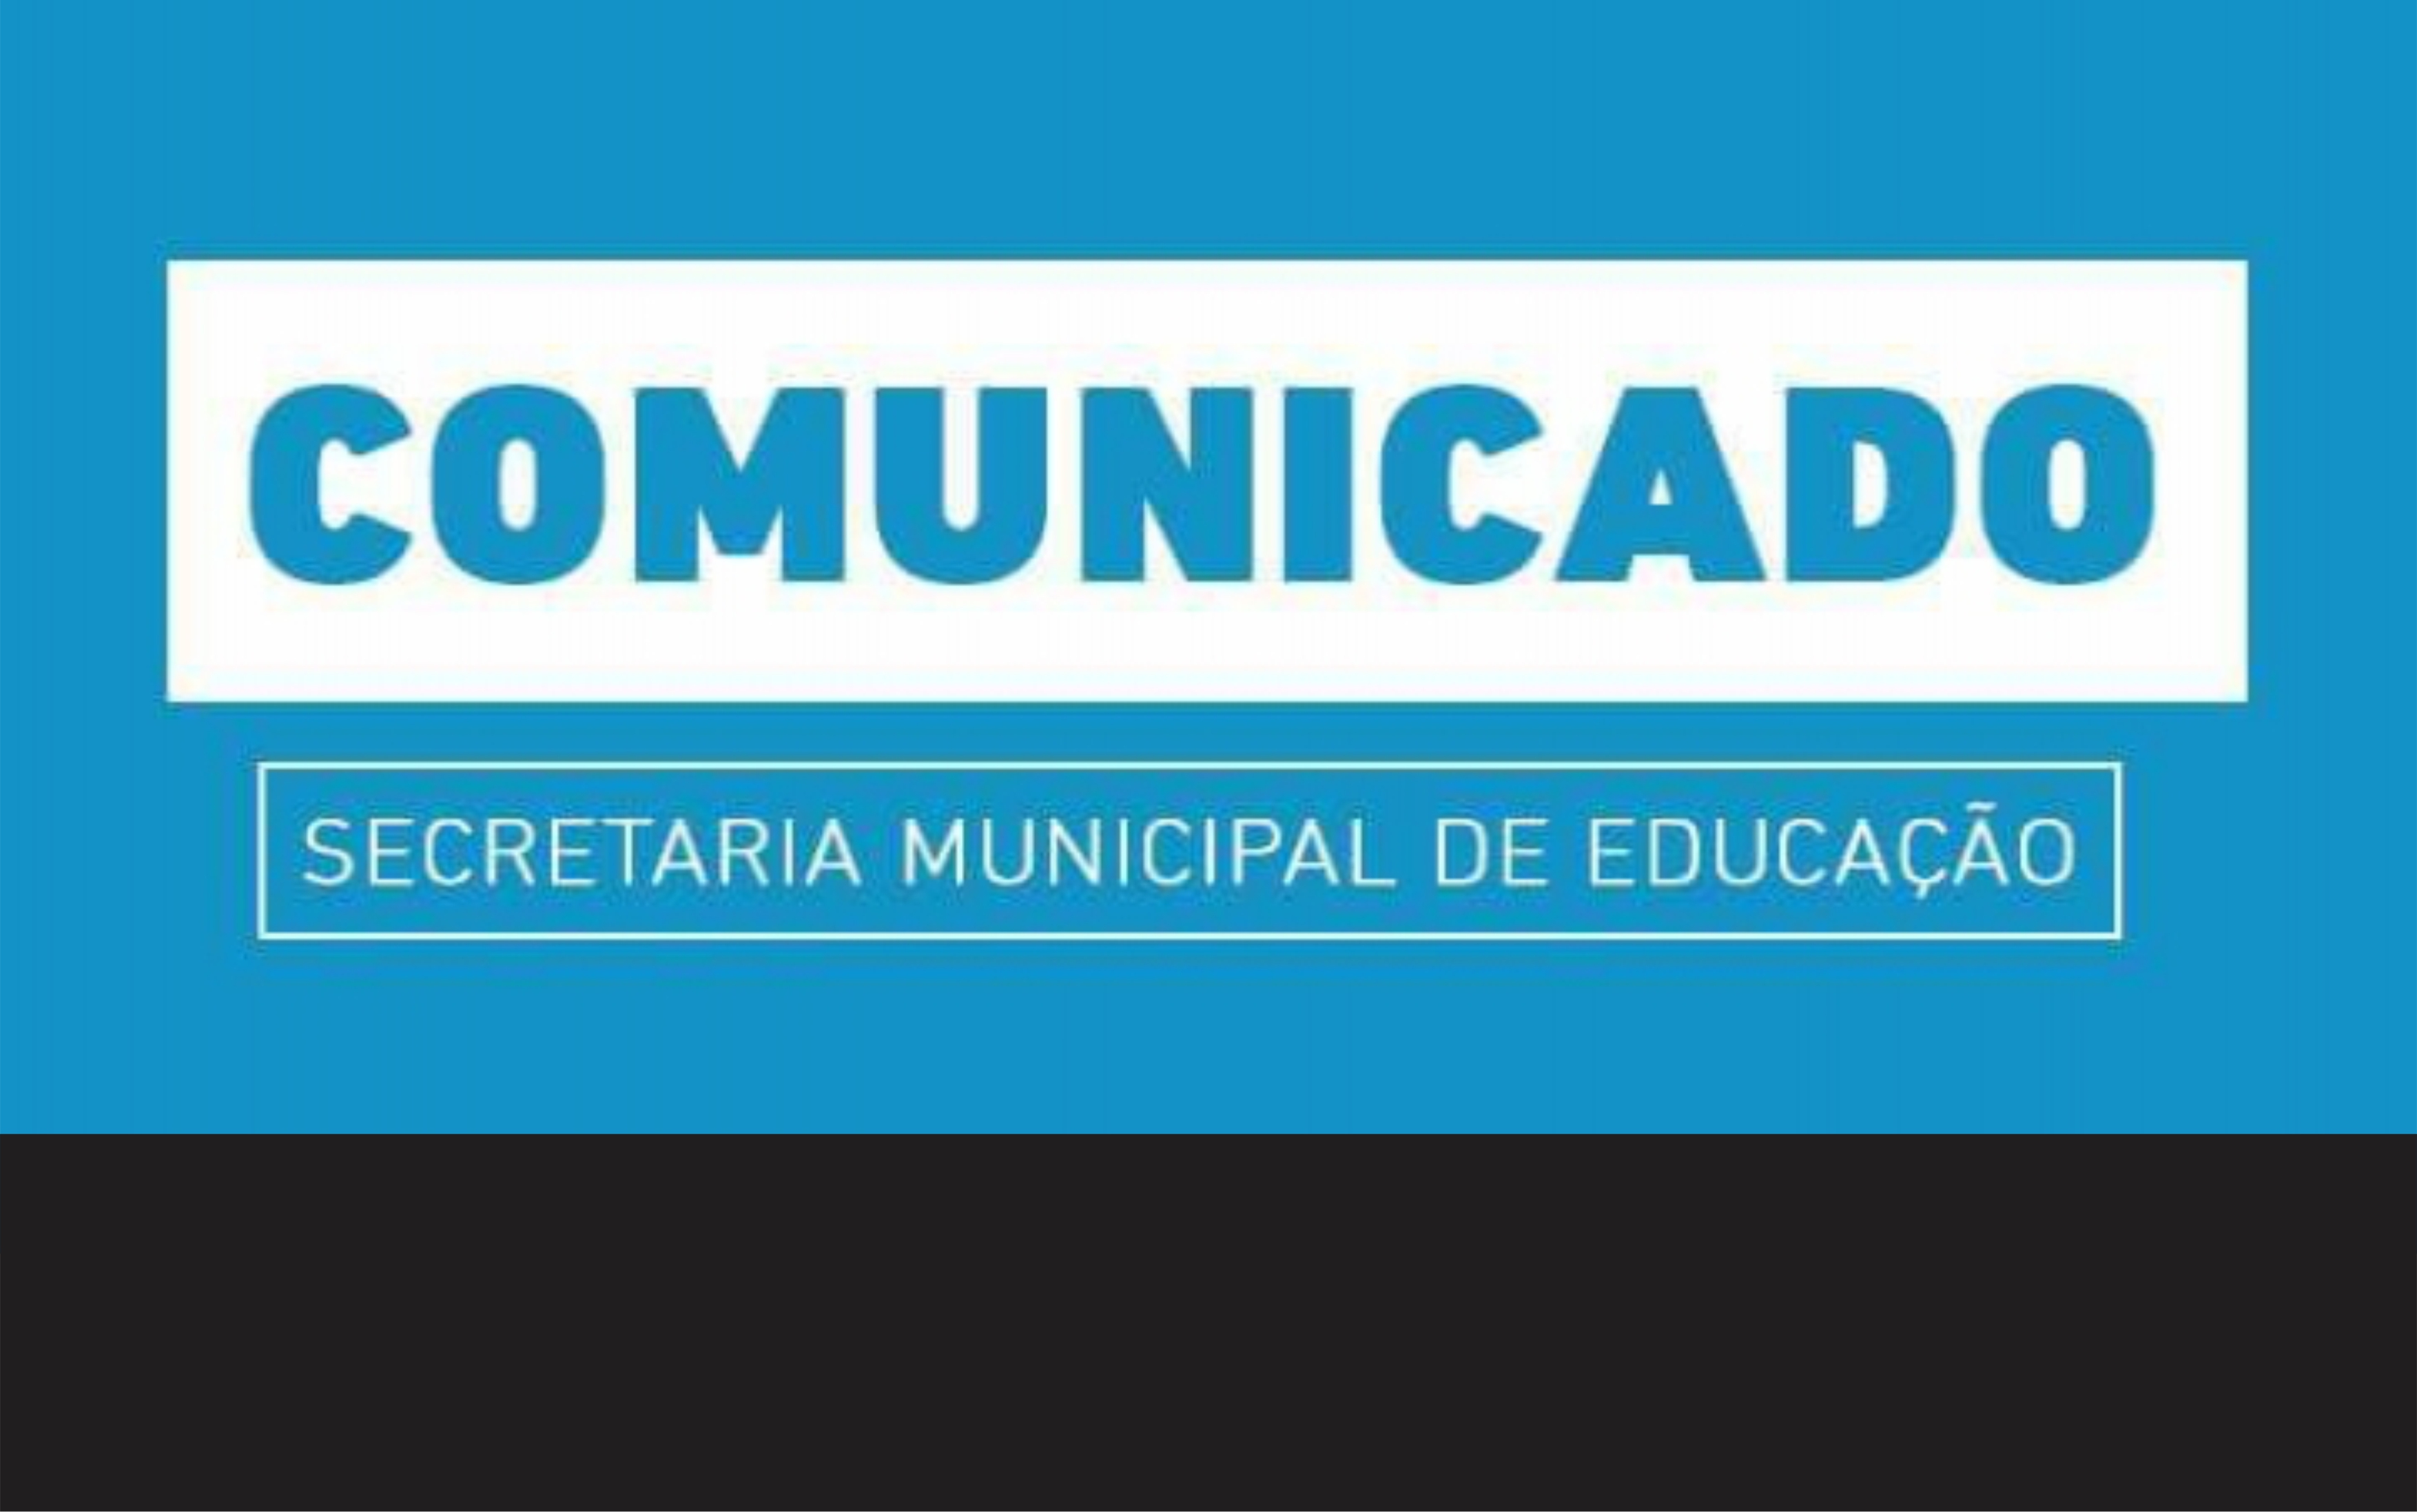 SECRETARIA MUNICIPAL DE EDUCAÇÃO EMITE COMUNICADO AOS PROFESSORES EFETIVOS PARA A REMOÇÃO EX-OFÍCIO